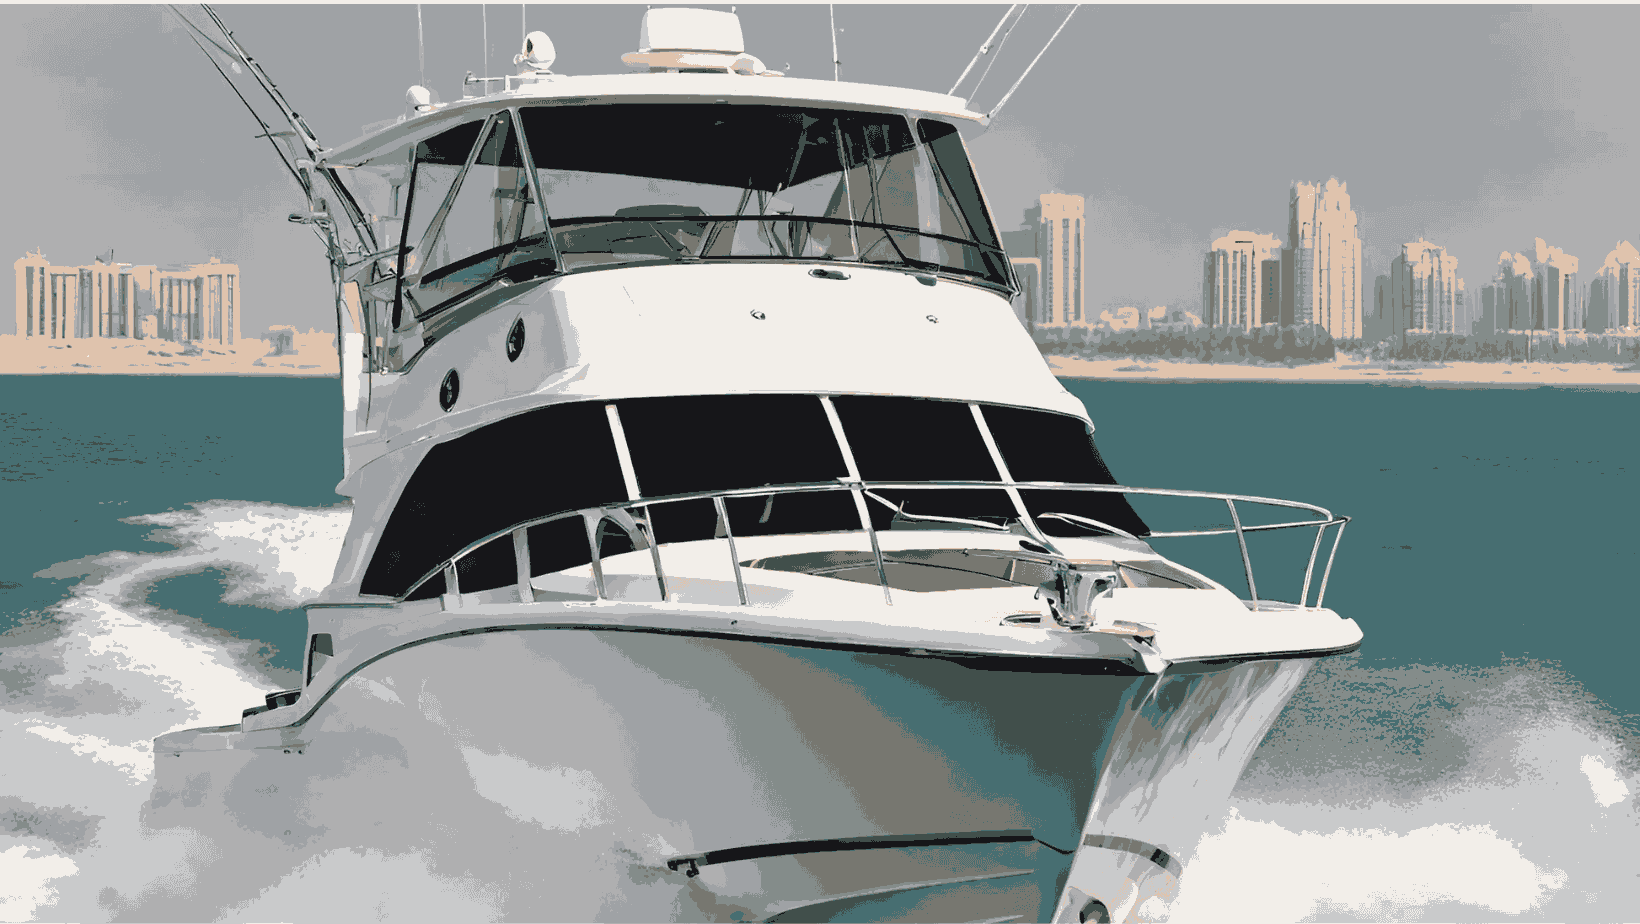 The 33 Feet Luxury Sport Fishing Boat